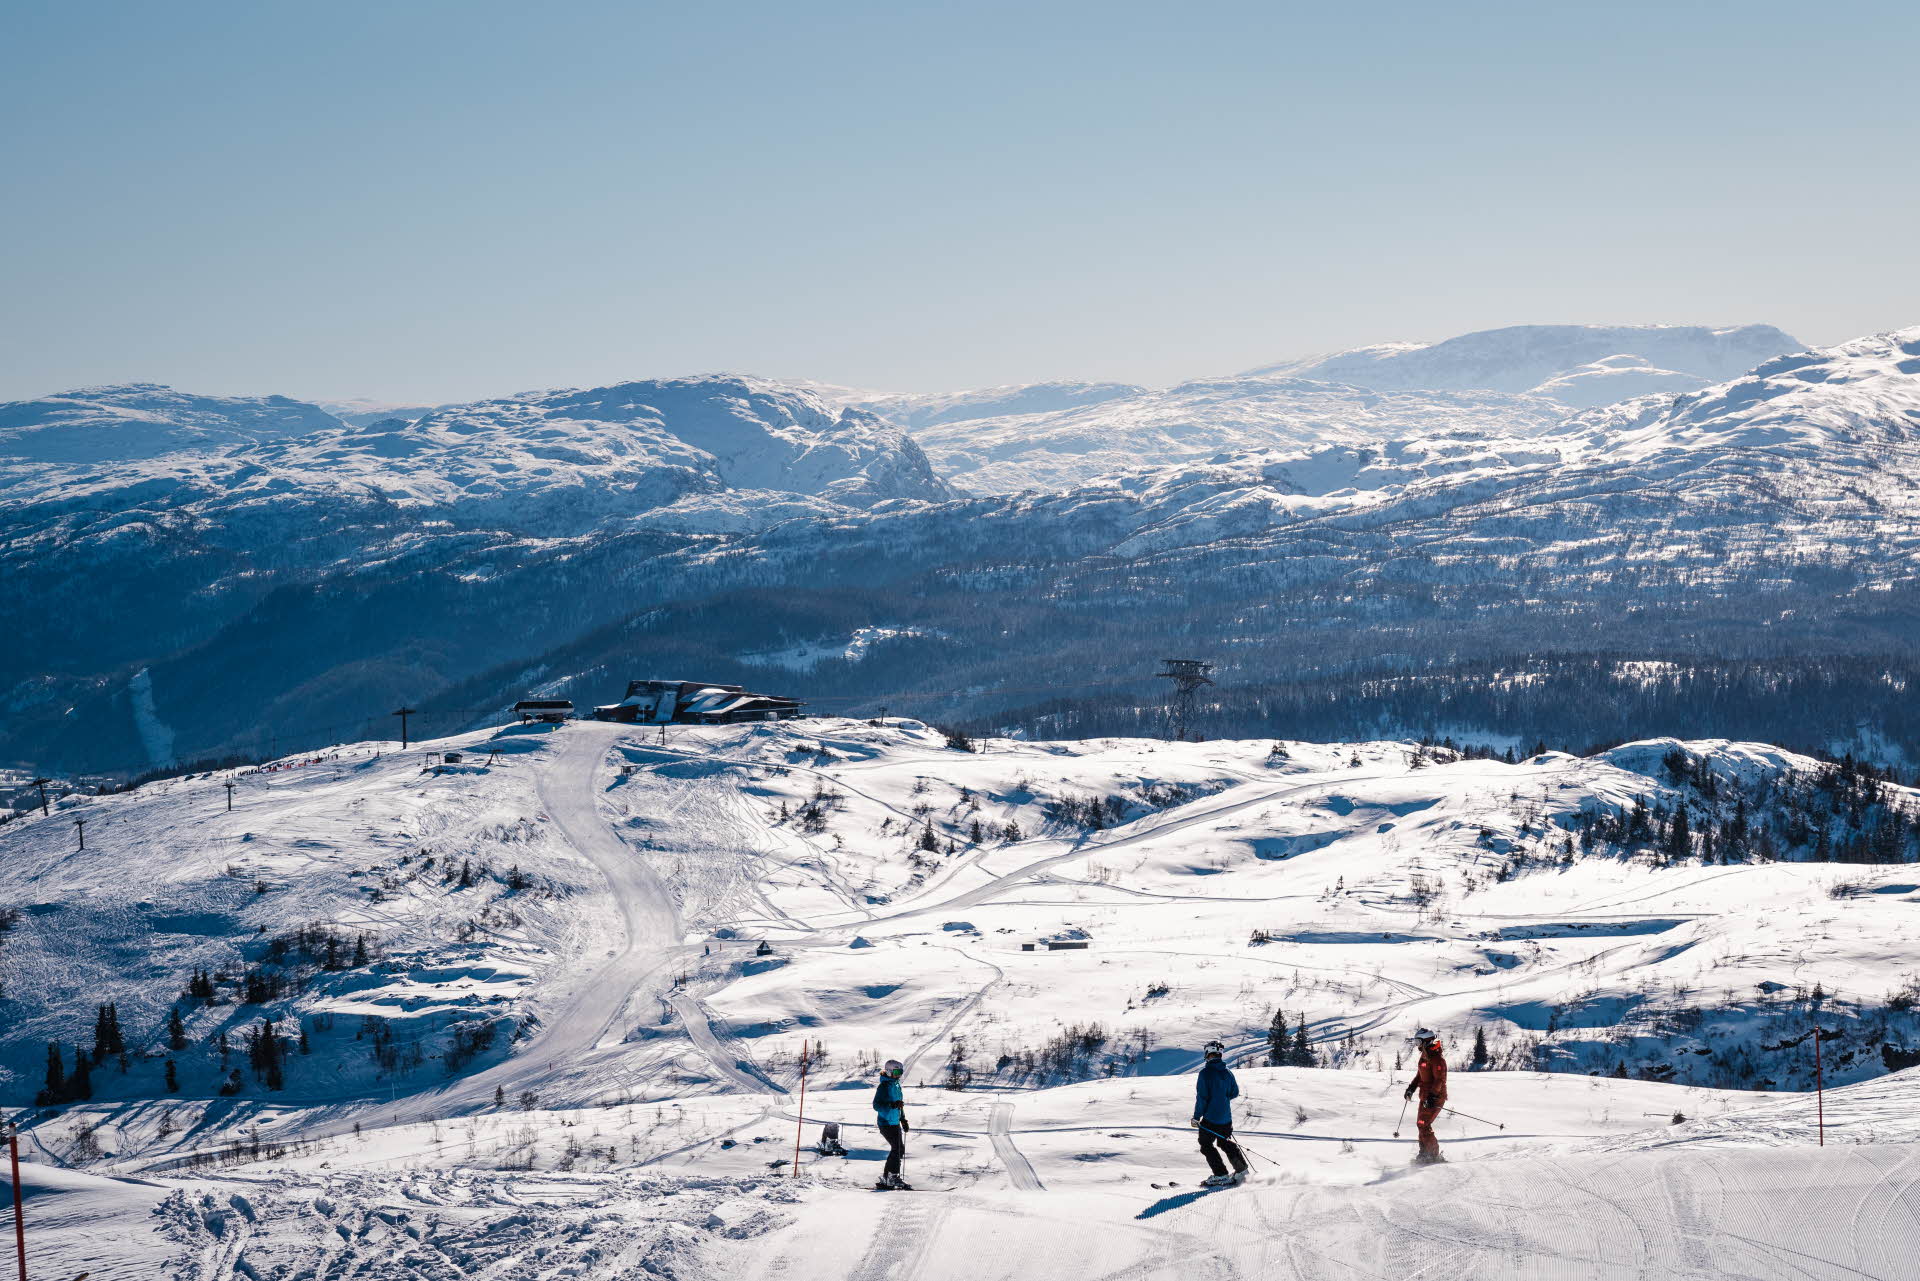 3 personnes skient sur une piste au-dessus de la gare amont du téléphérique de Voss surplombant le merveilleux paysage hivernal de la station de ski de Voss